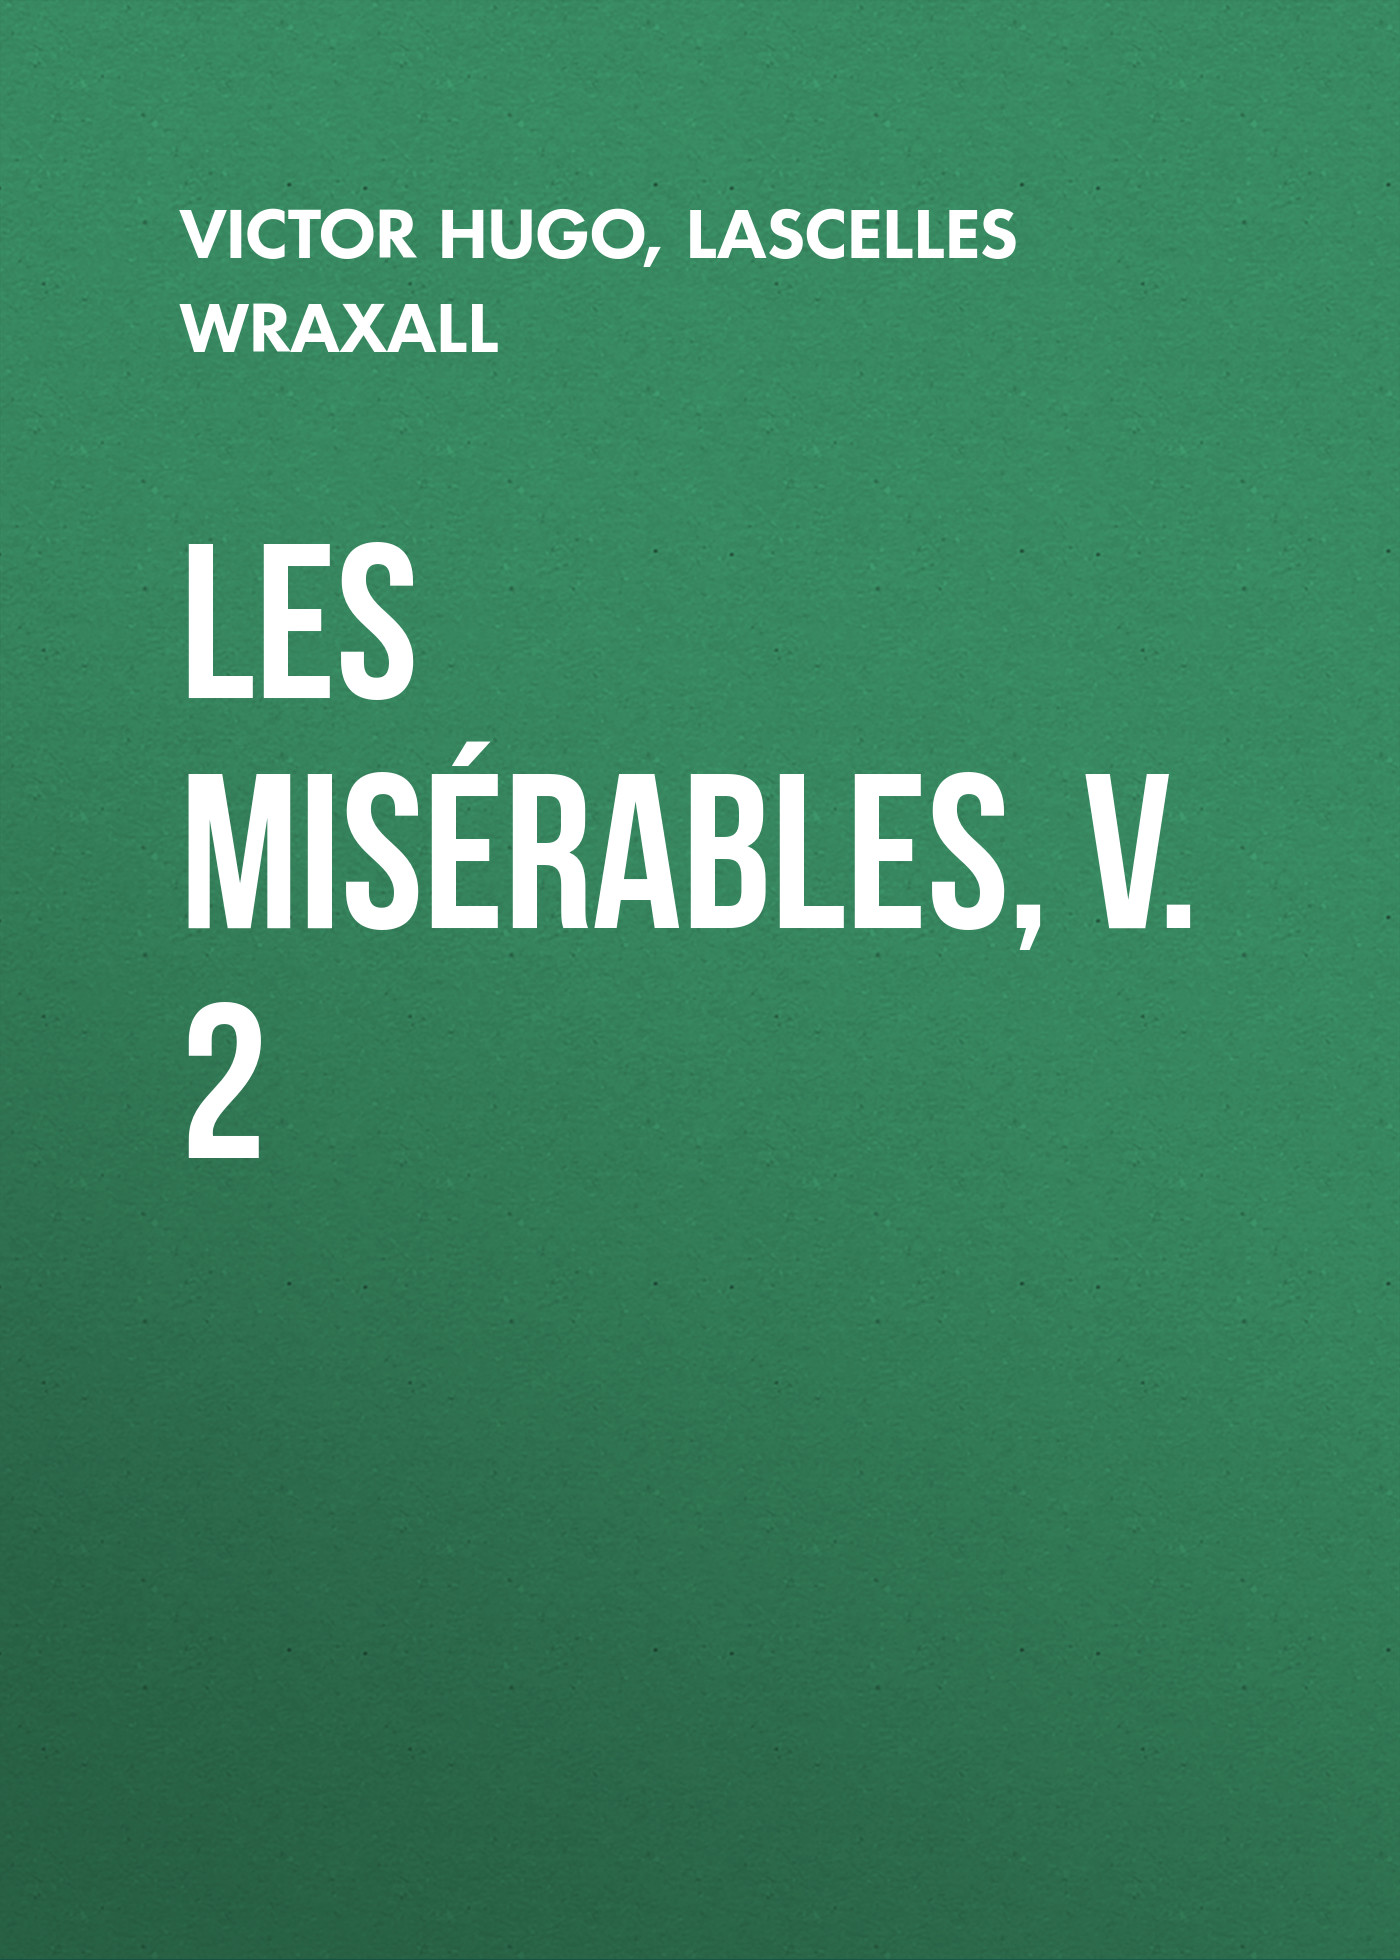 Книга Les Misérables, v. 2 из серии , созданная Lascelles Wraxall, Victor Hugo, может относится к жанру Литература 19 века, Зарубежная старинная литература, Зарубежная классика. Стоимость электронной книги Les Misérables, v. 2 с идентификатором 25230340 составляет 0 руб.